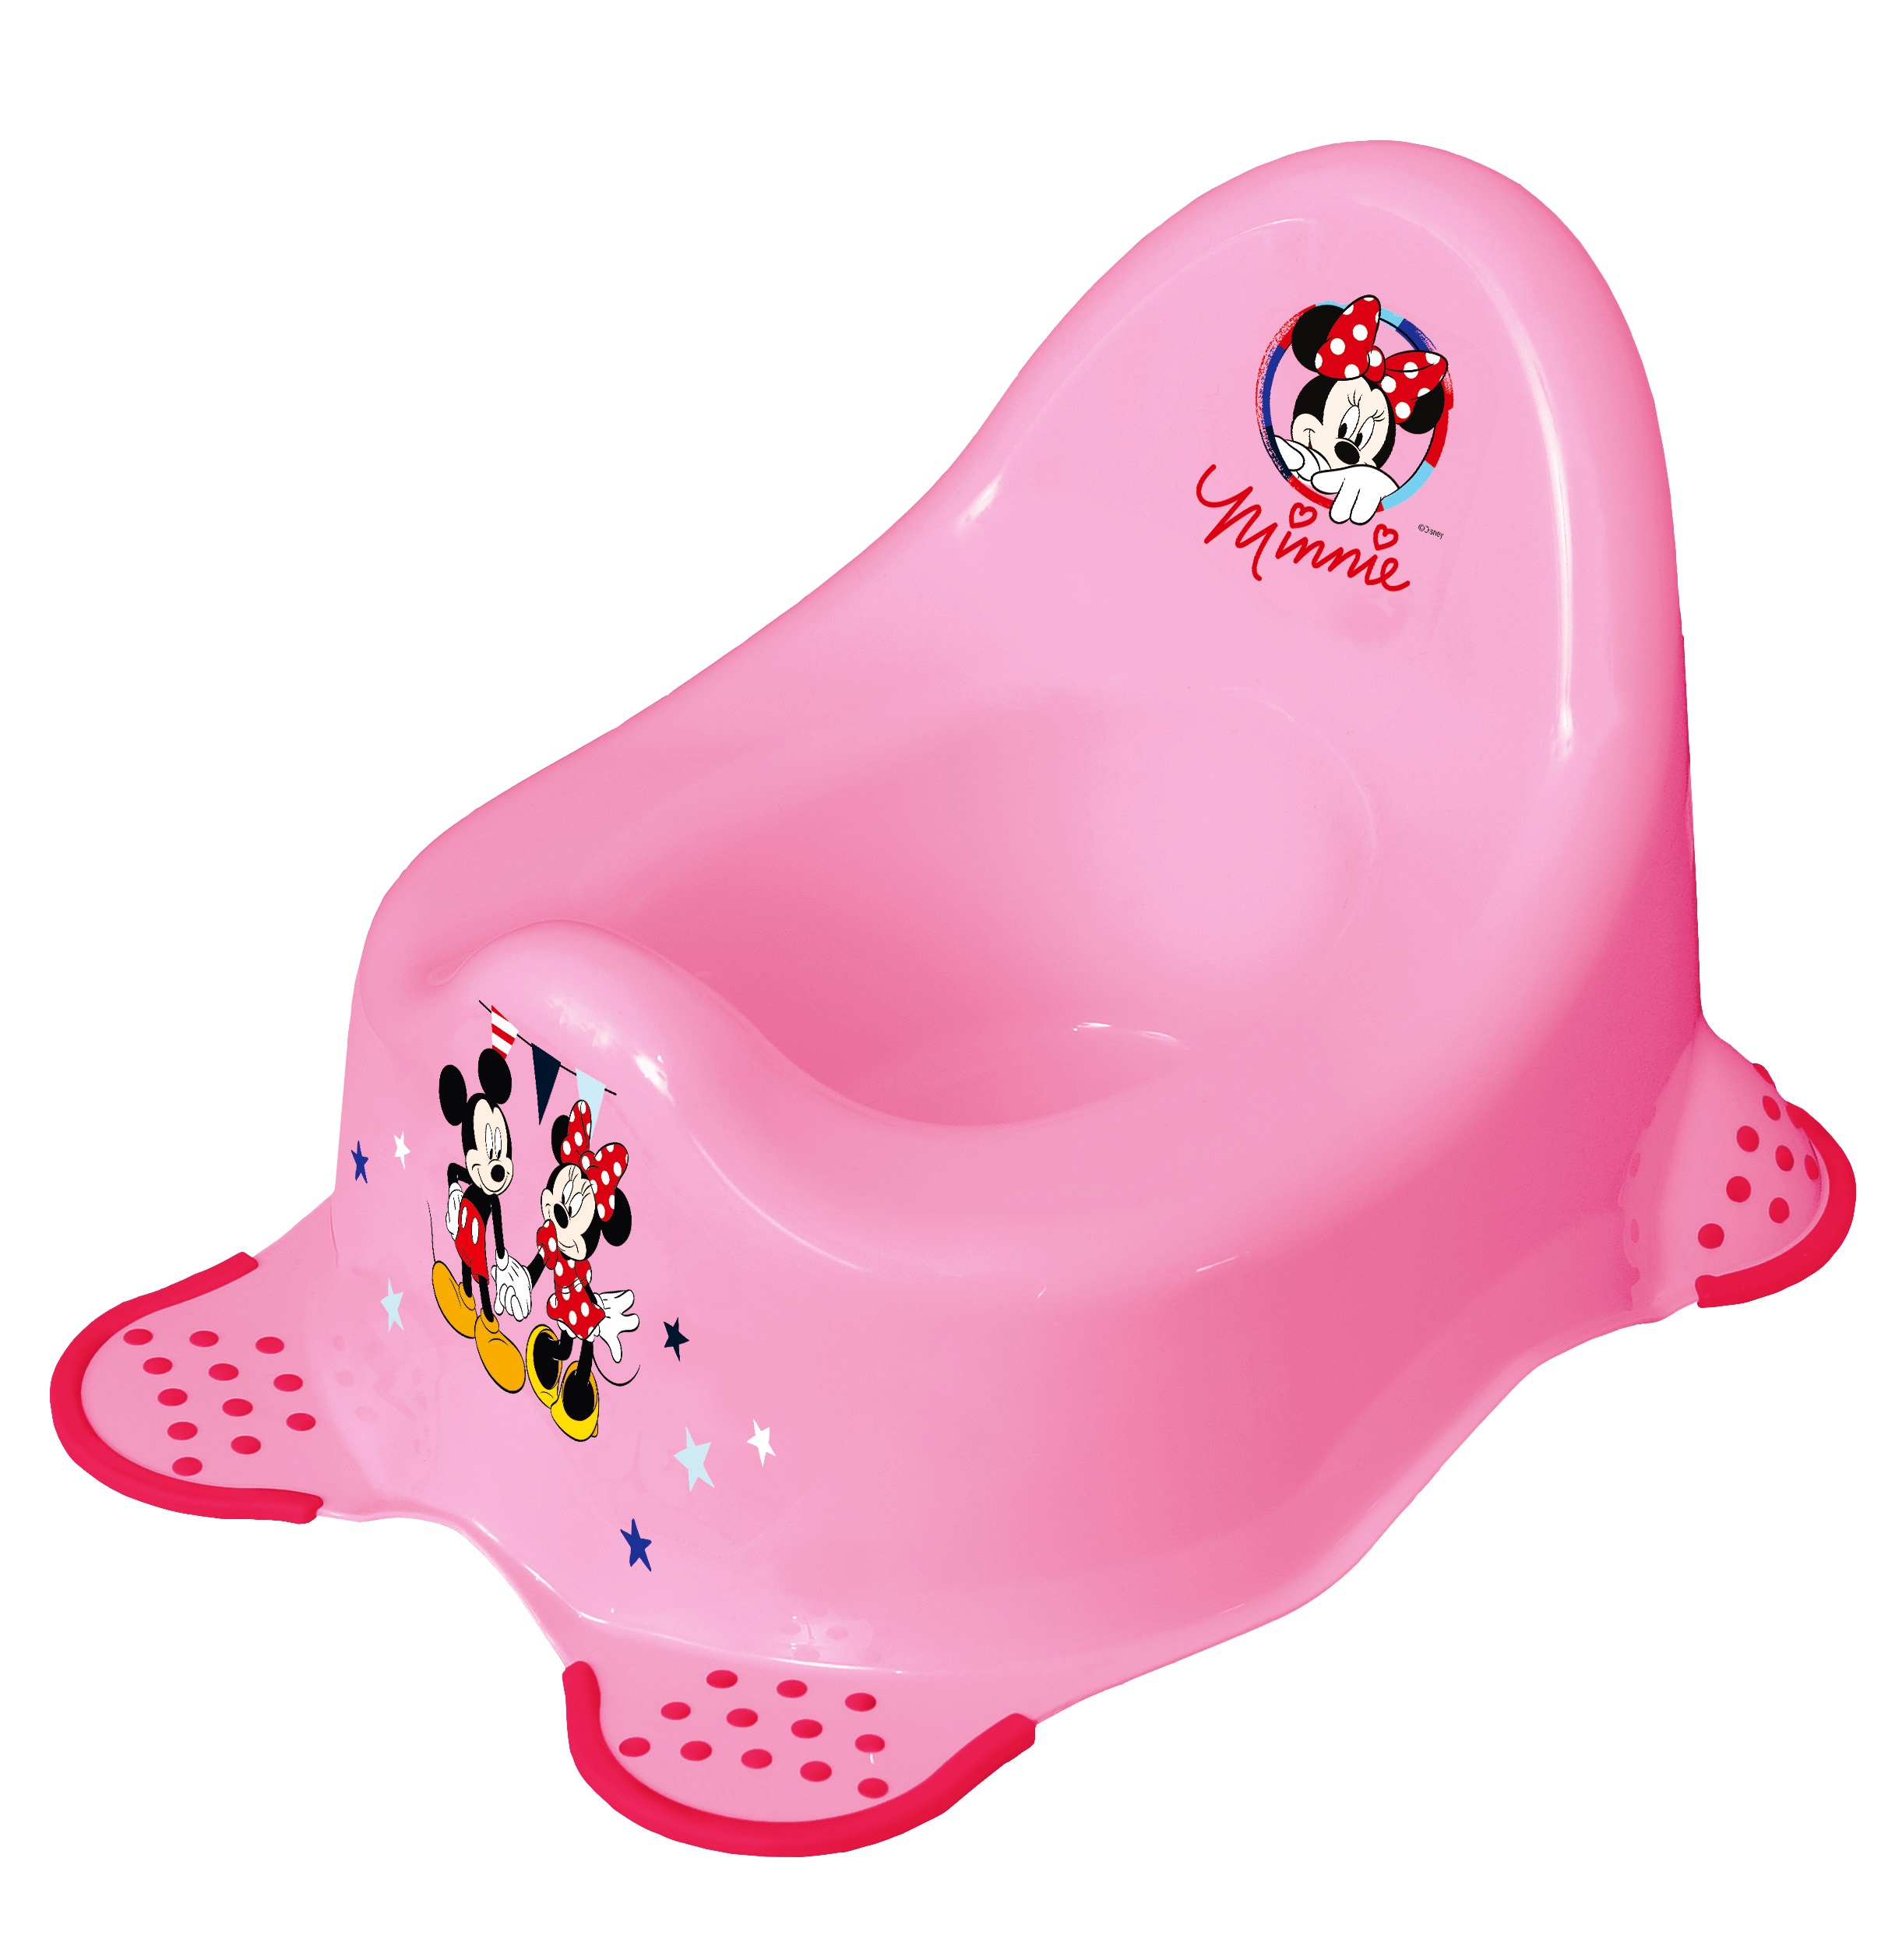 Pot bébé toilettes musical Minnie rose DISNEY BABY